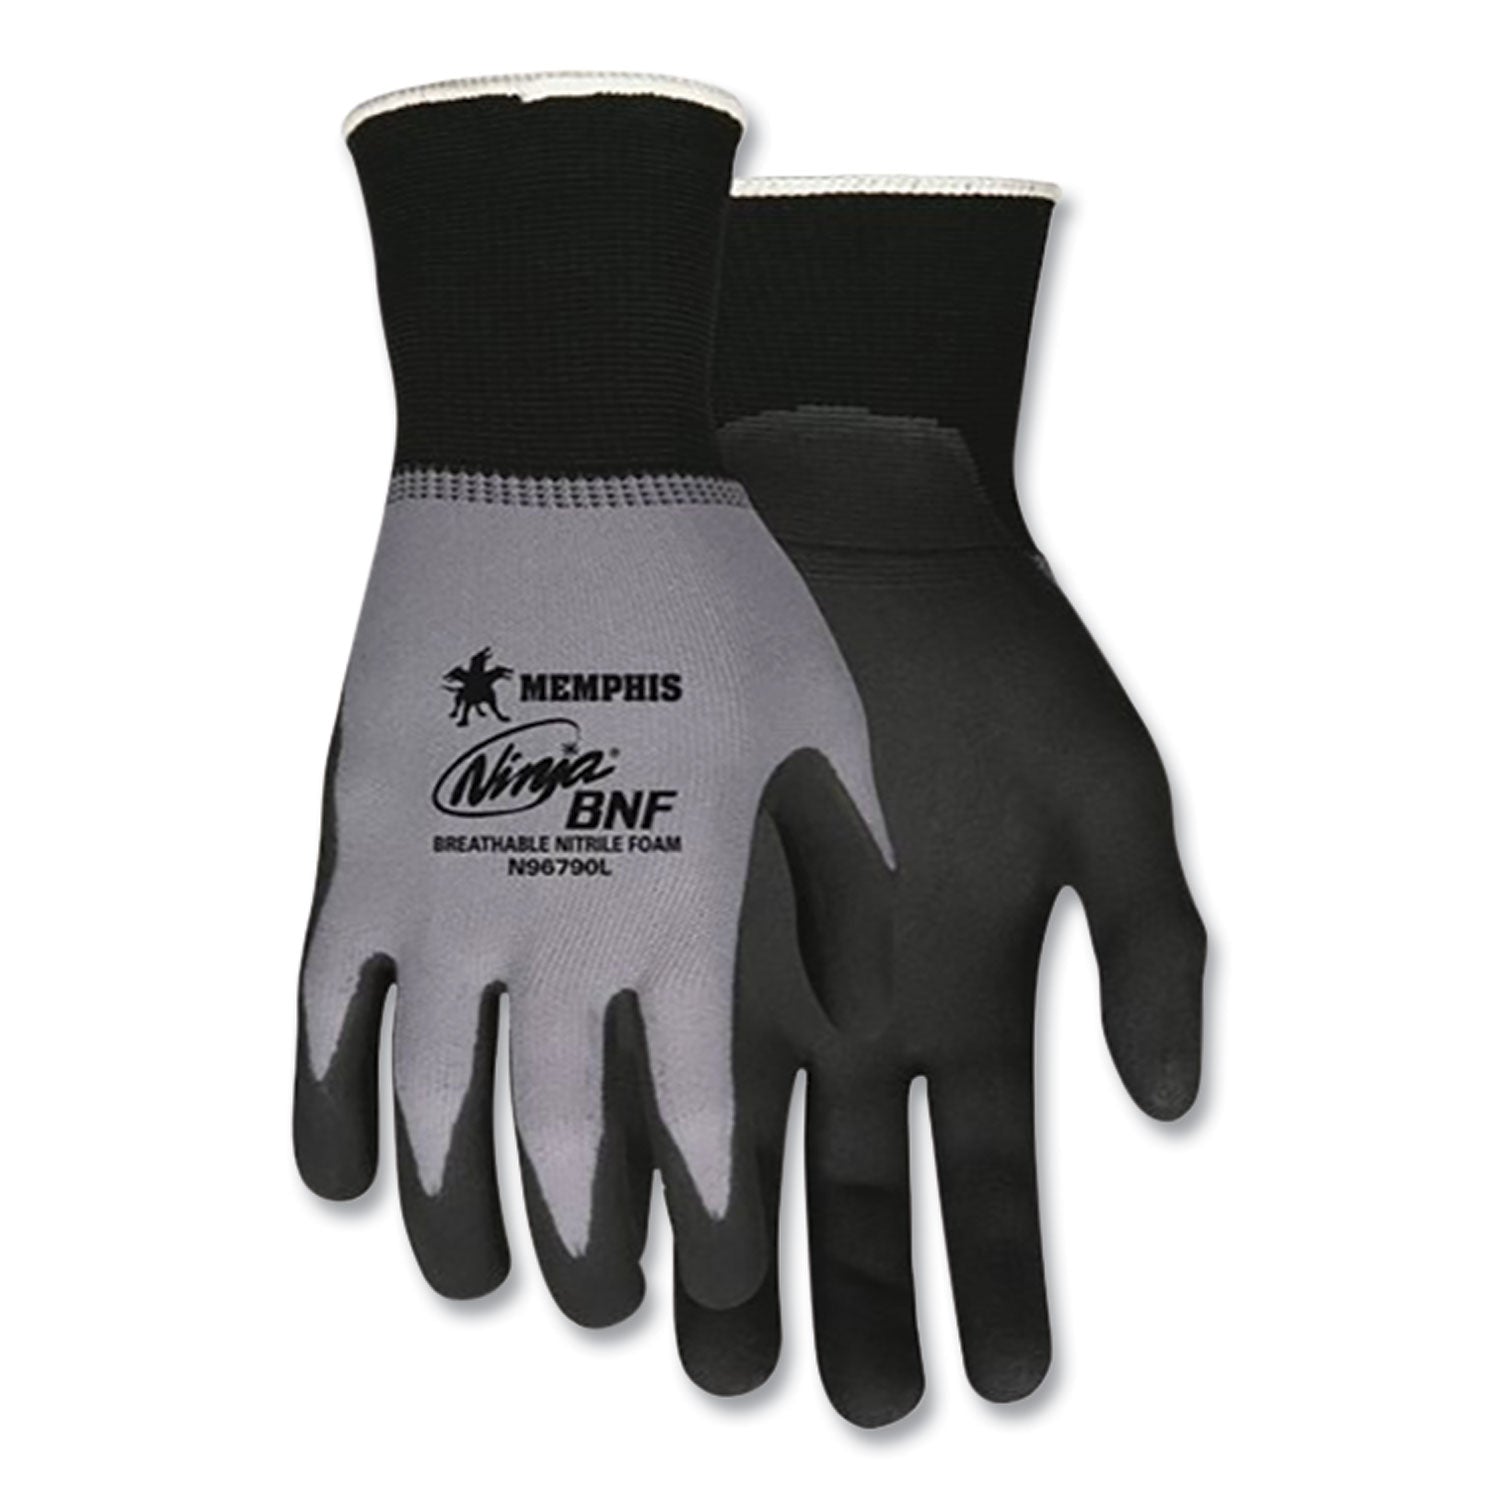 ninja-nitrile-coating-nylon-spandex-gloves-black-gray-large-dozen_crwn96790l - 1